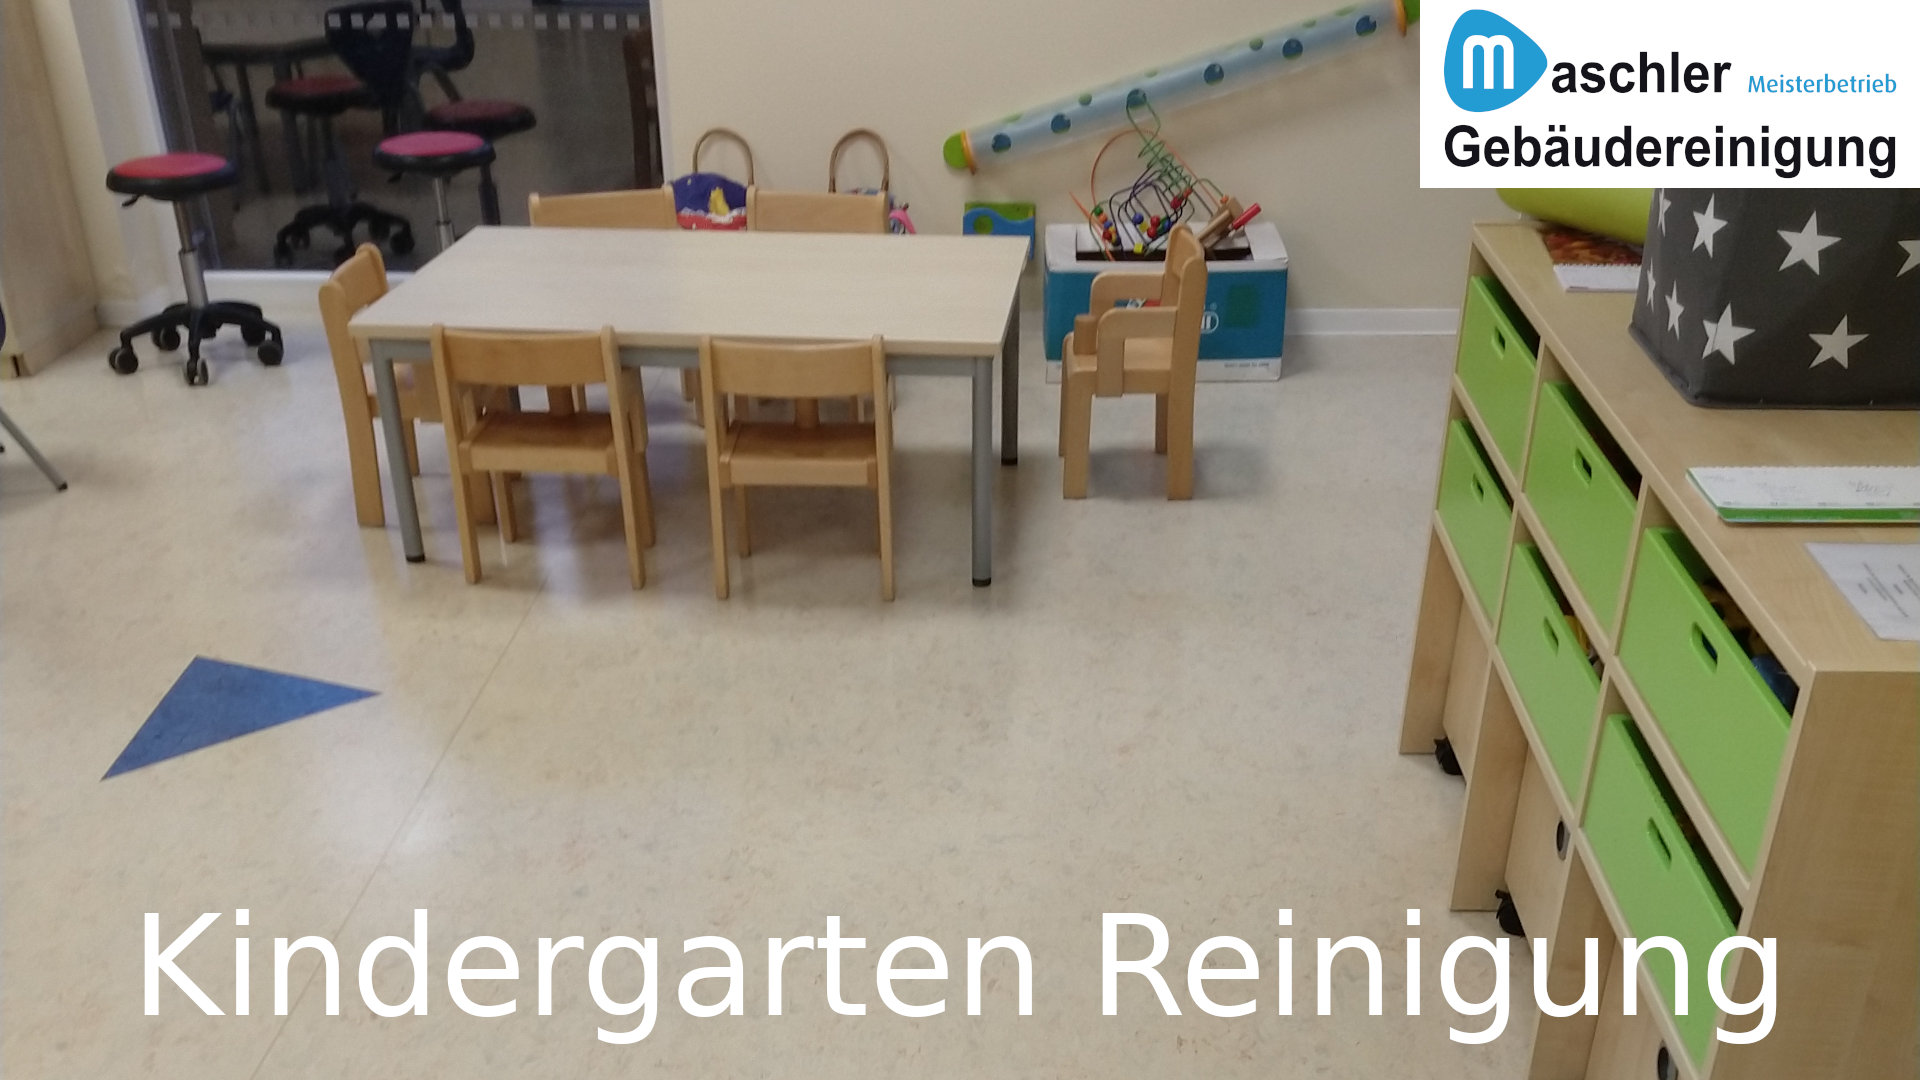 Unterhaltsreinigung im Kindergarten - Gebäudereinigung Maschler GmbH